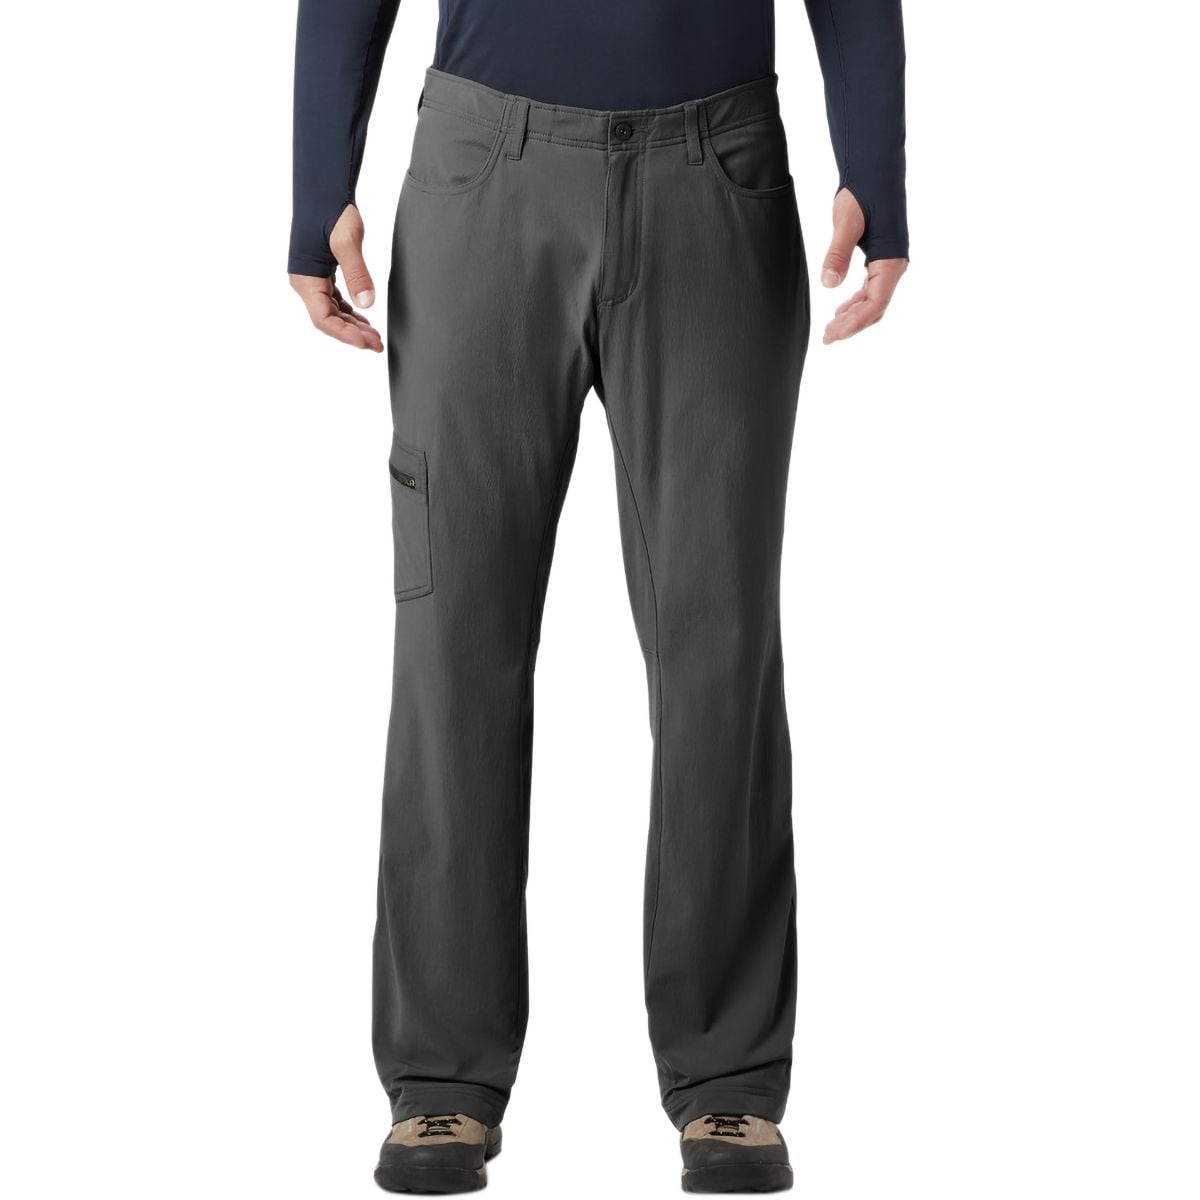 Men's Softshell Pants | Gear Department: Men's Pants | US-Parks.com ...